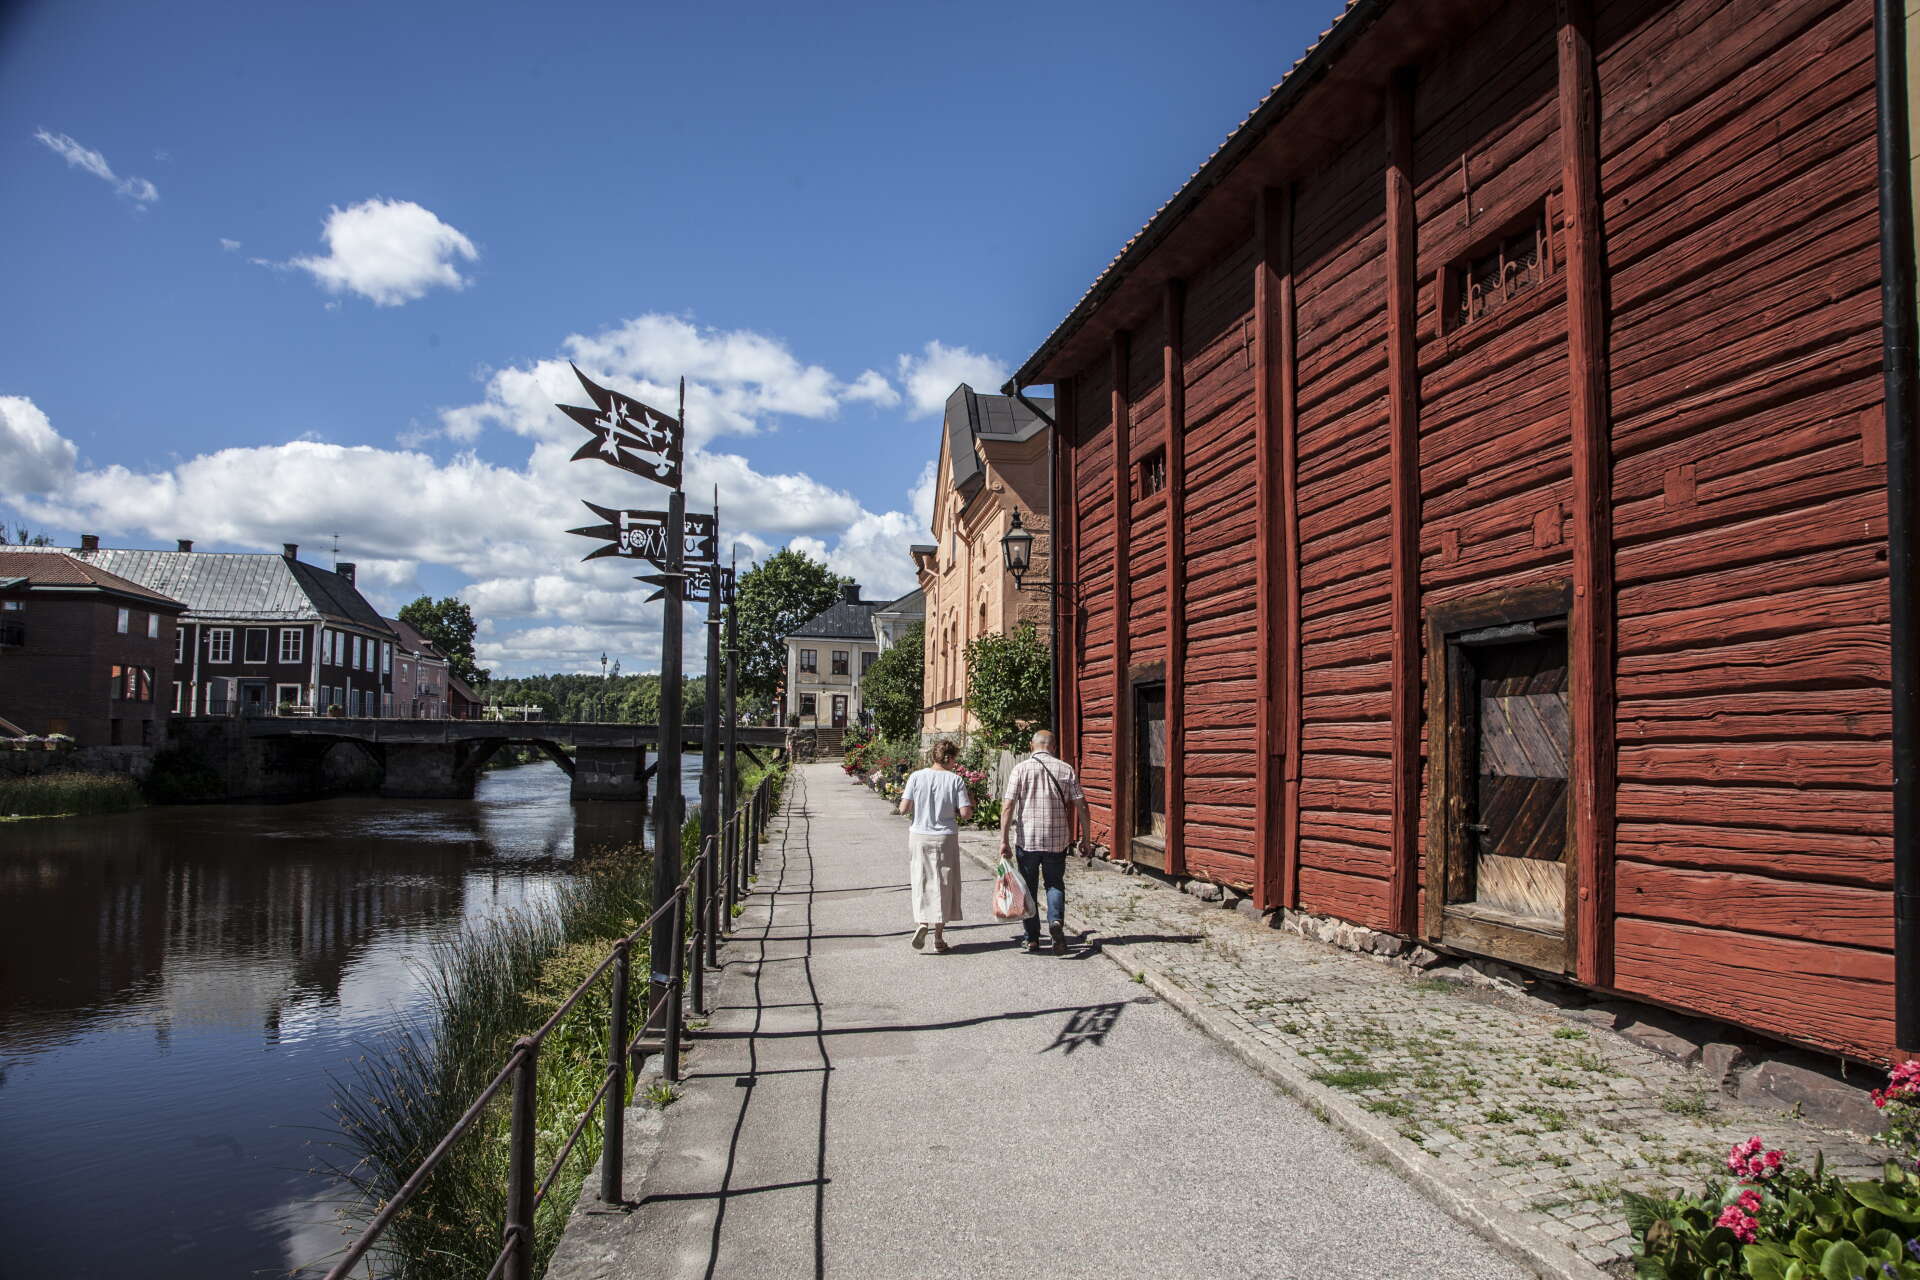 Arbogas storhetstid som maktcentrum ligger flera hundra år tillbaka i tiden, men småstadscharmen är påtaglig än i dag.